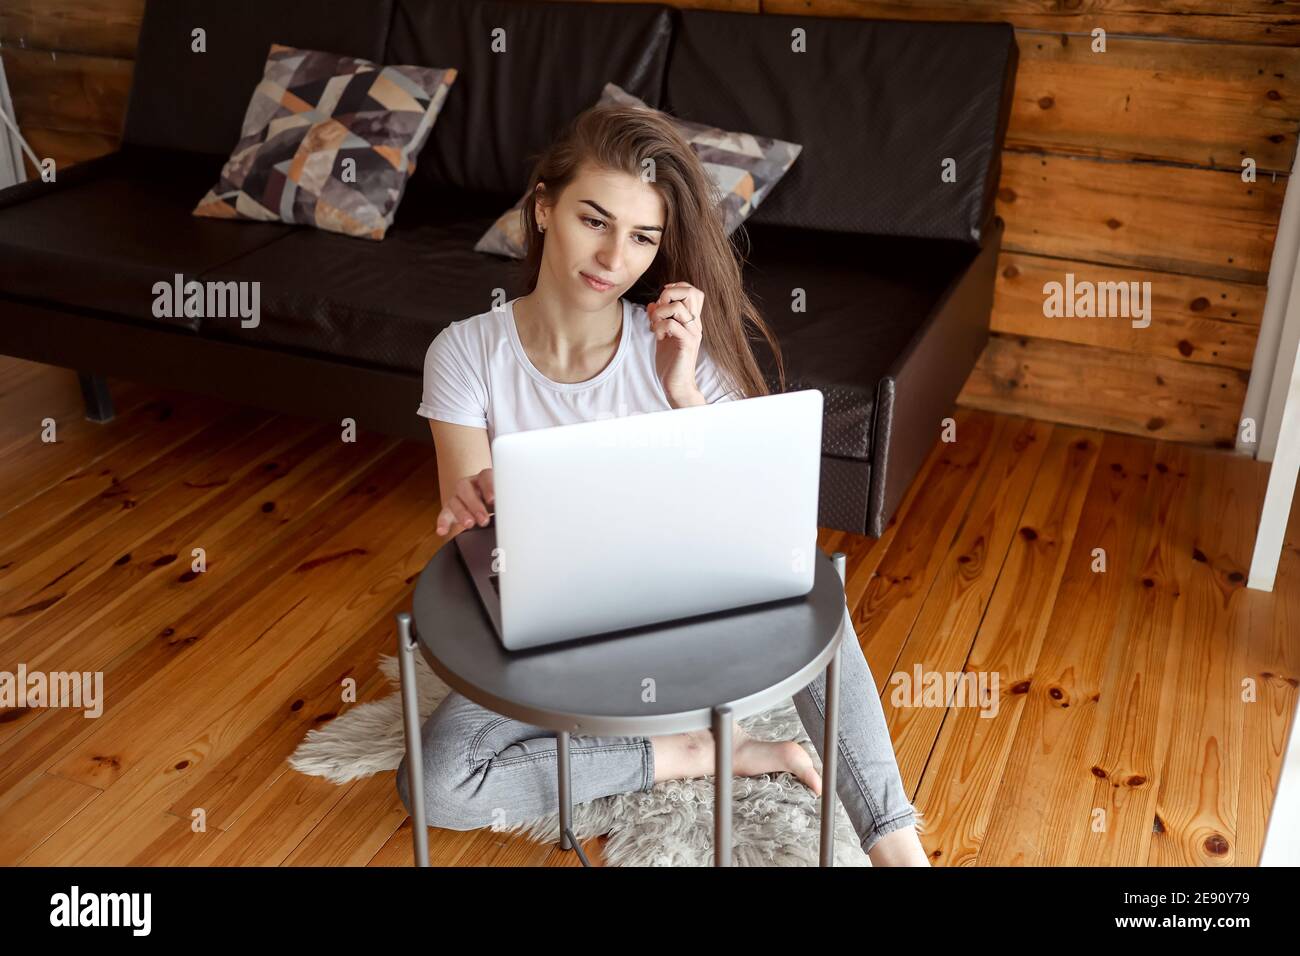 Giovane donna seduta sul pavimento e con un computer portatile. Ragazza allegra trascorrere tempo libero chattando in rete sociale, scrivere messaggio, blogger concentrato fr Foto Stock